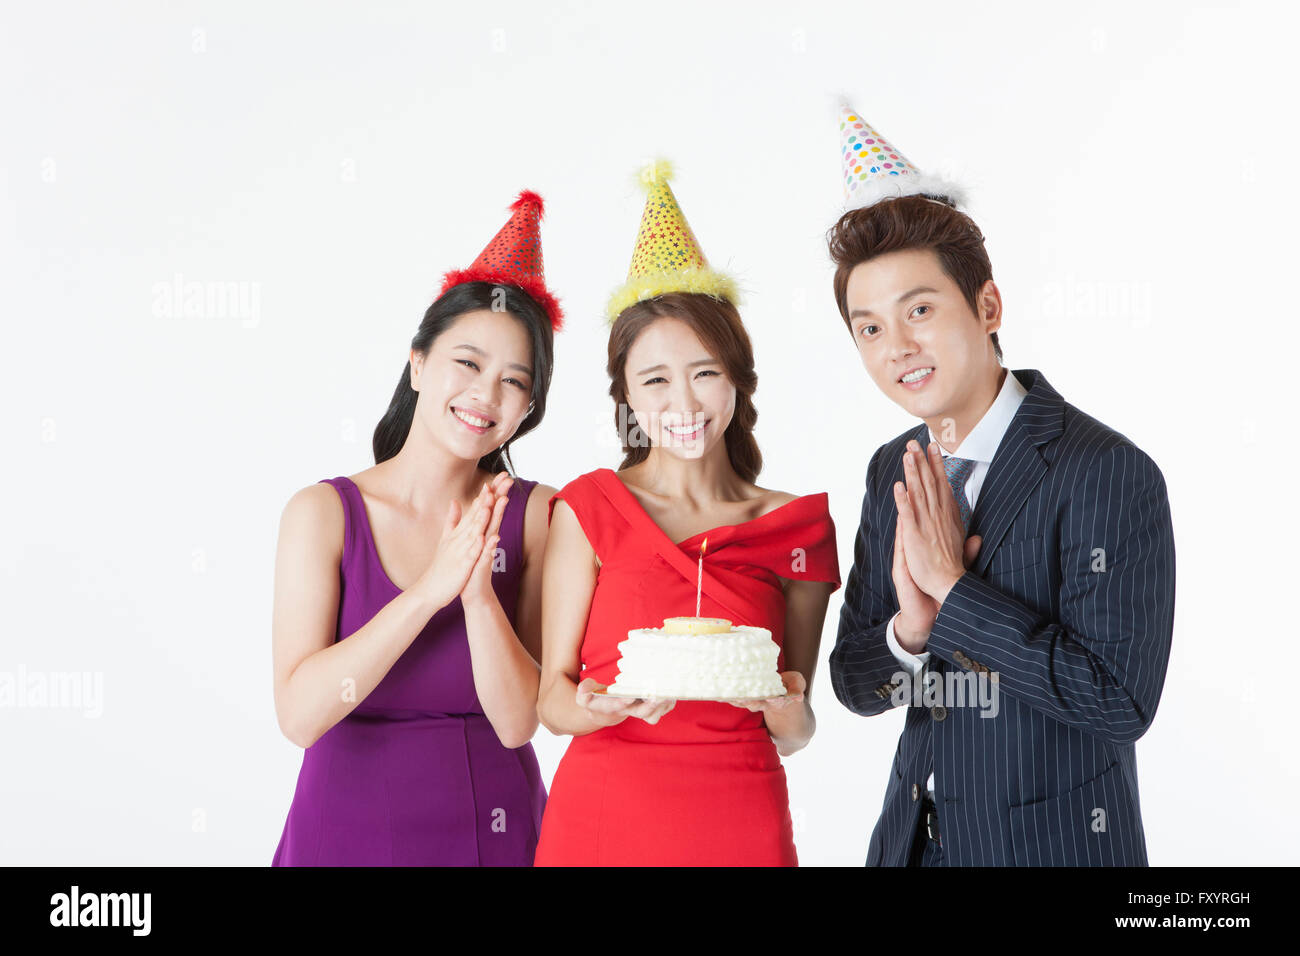 Portrait de trois jeunes gens avec un gâteau at party Banque D'Images